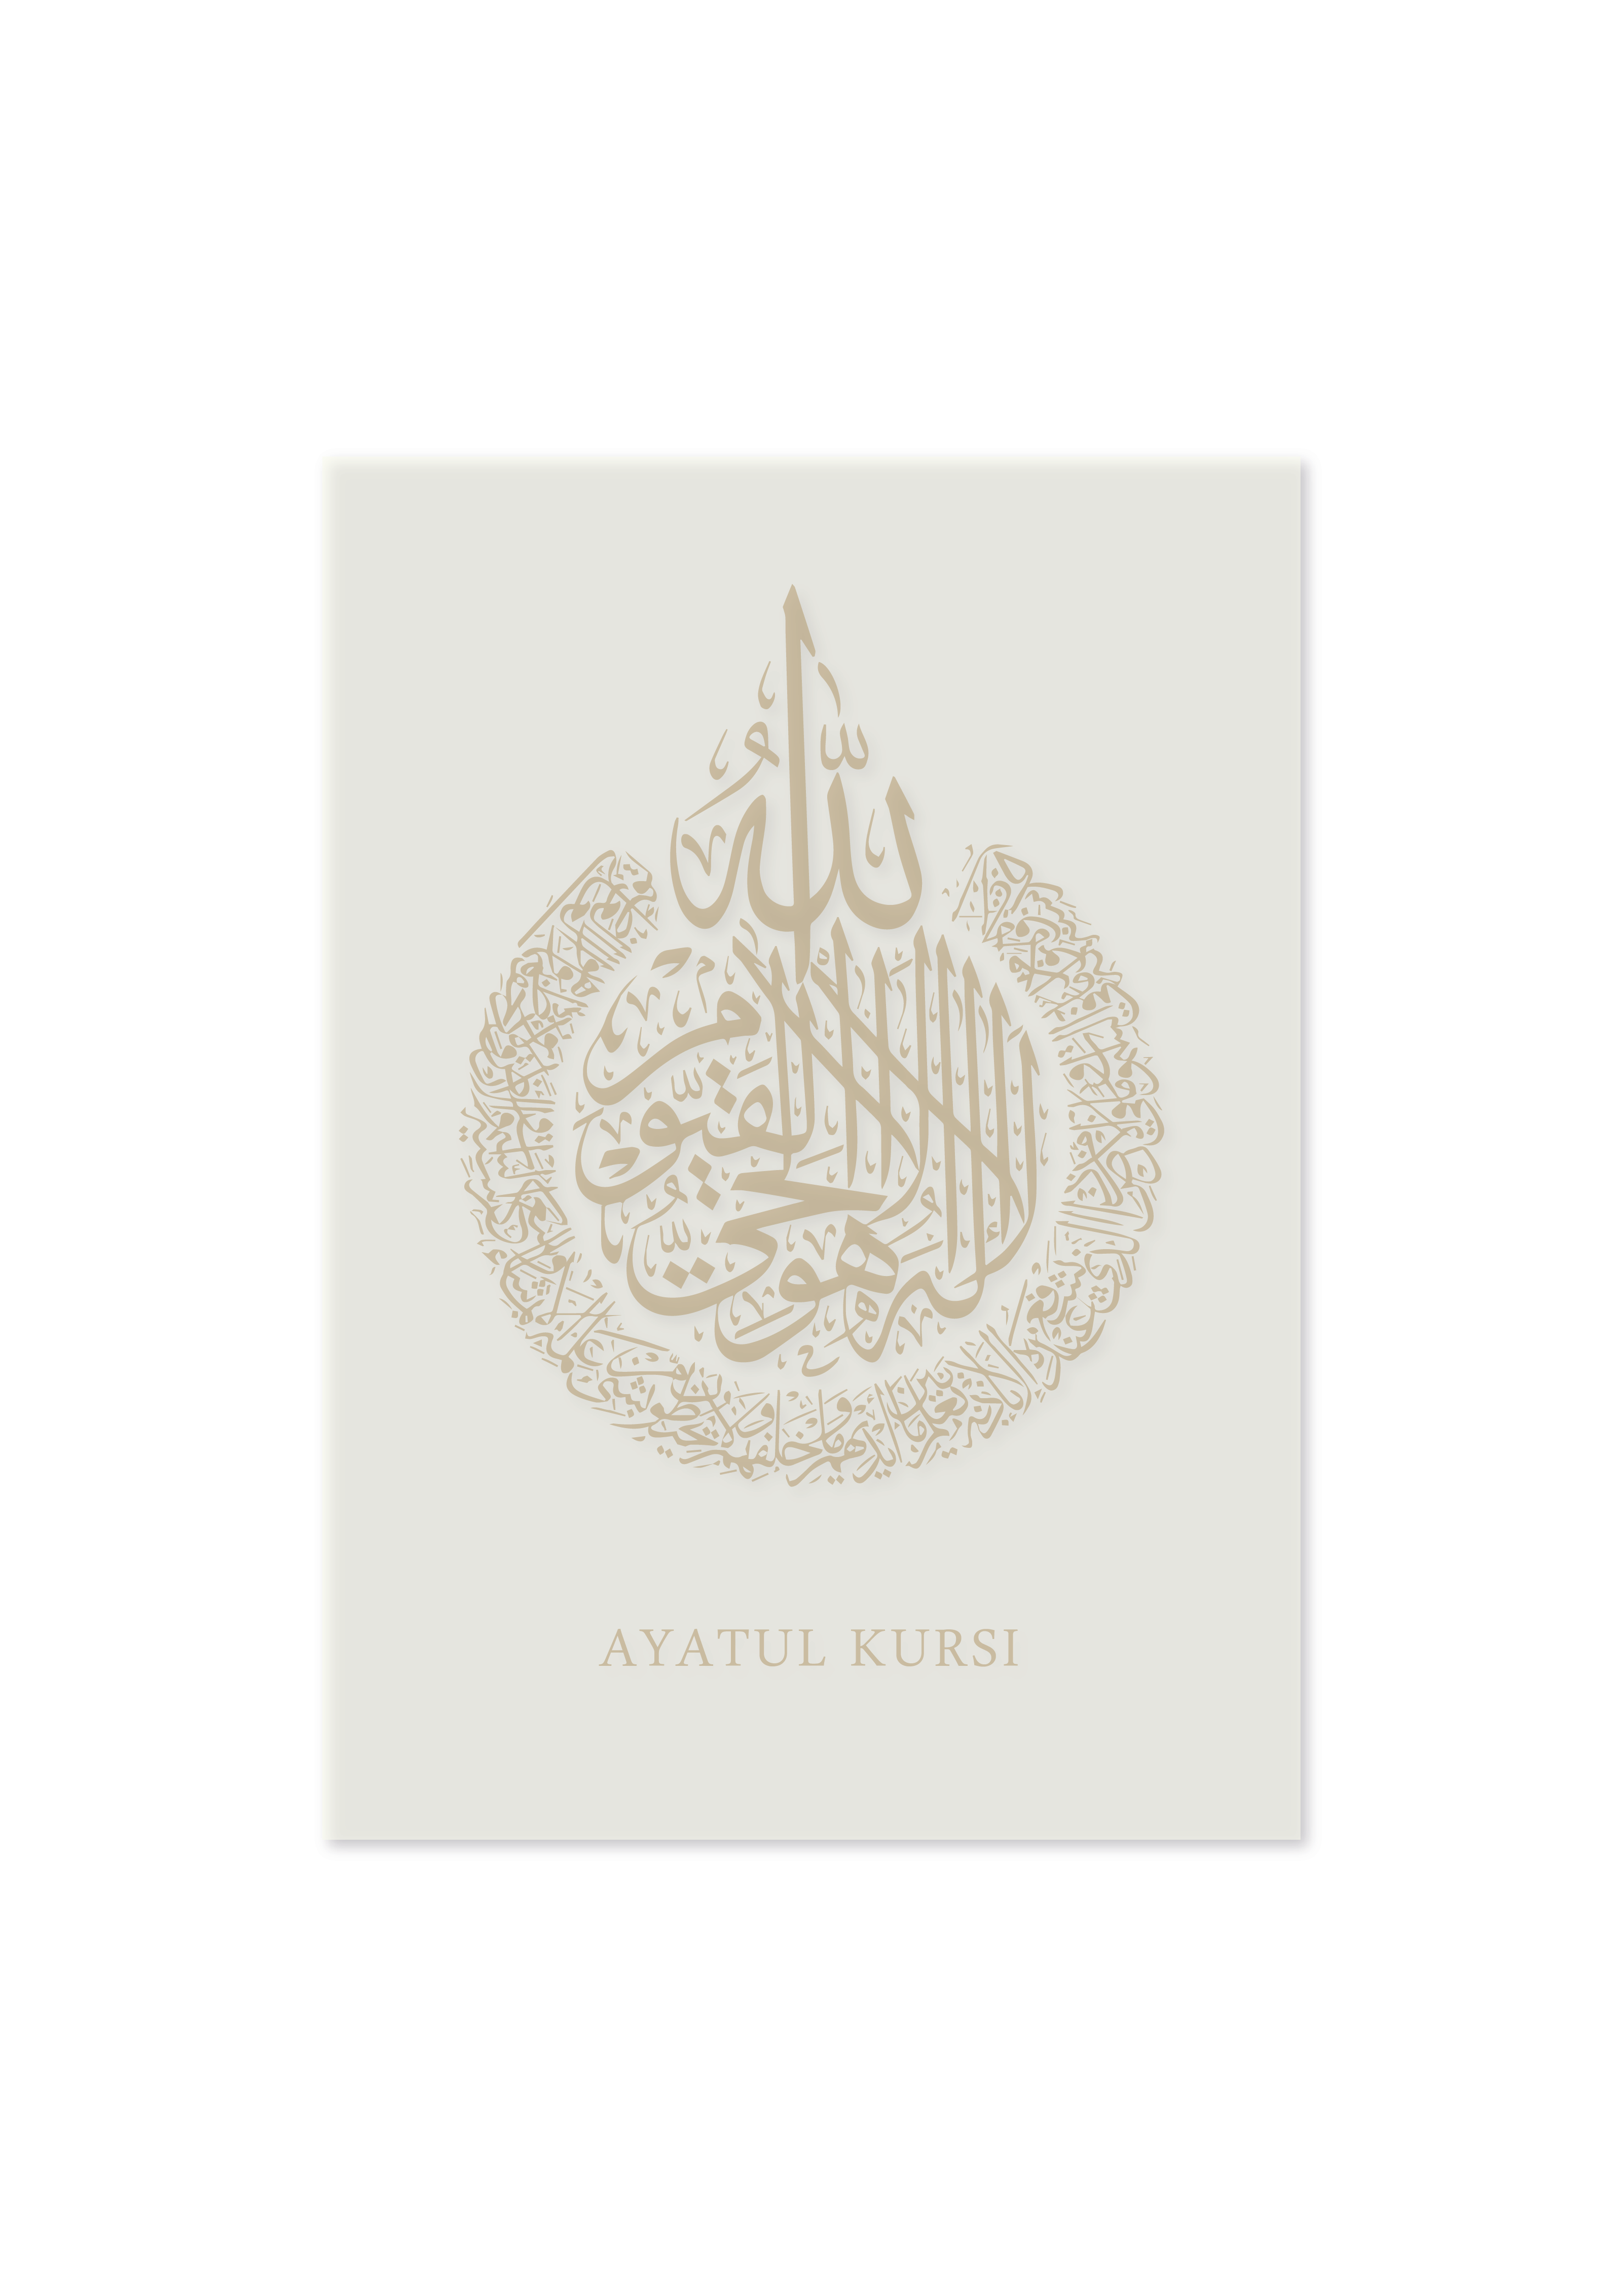 Ayatul Kursi in Arabic Gold Islamic calligraphy | Arabic Calligraphy Islamic Wall Art Print